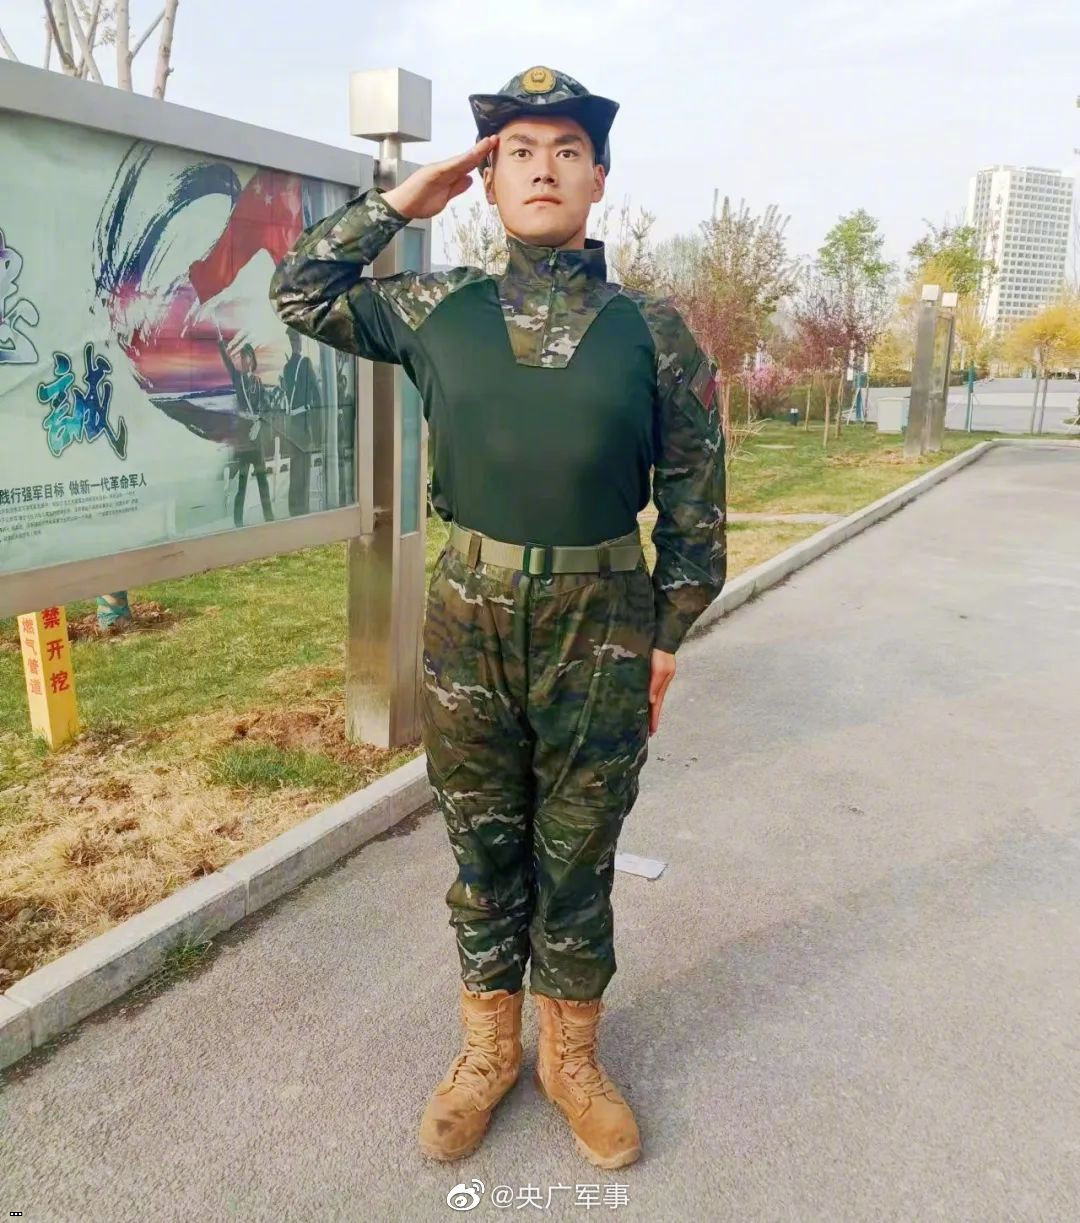 Костюм лягушки: полевая униформа Тип 21 для Народной вооруженной милиции 